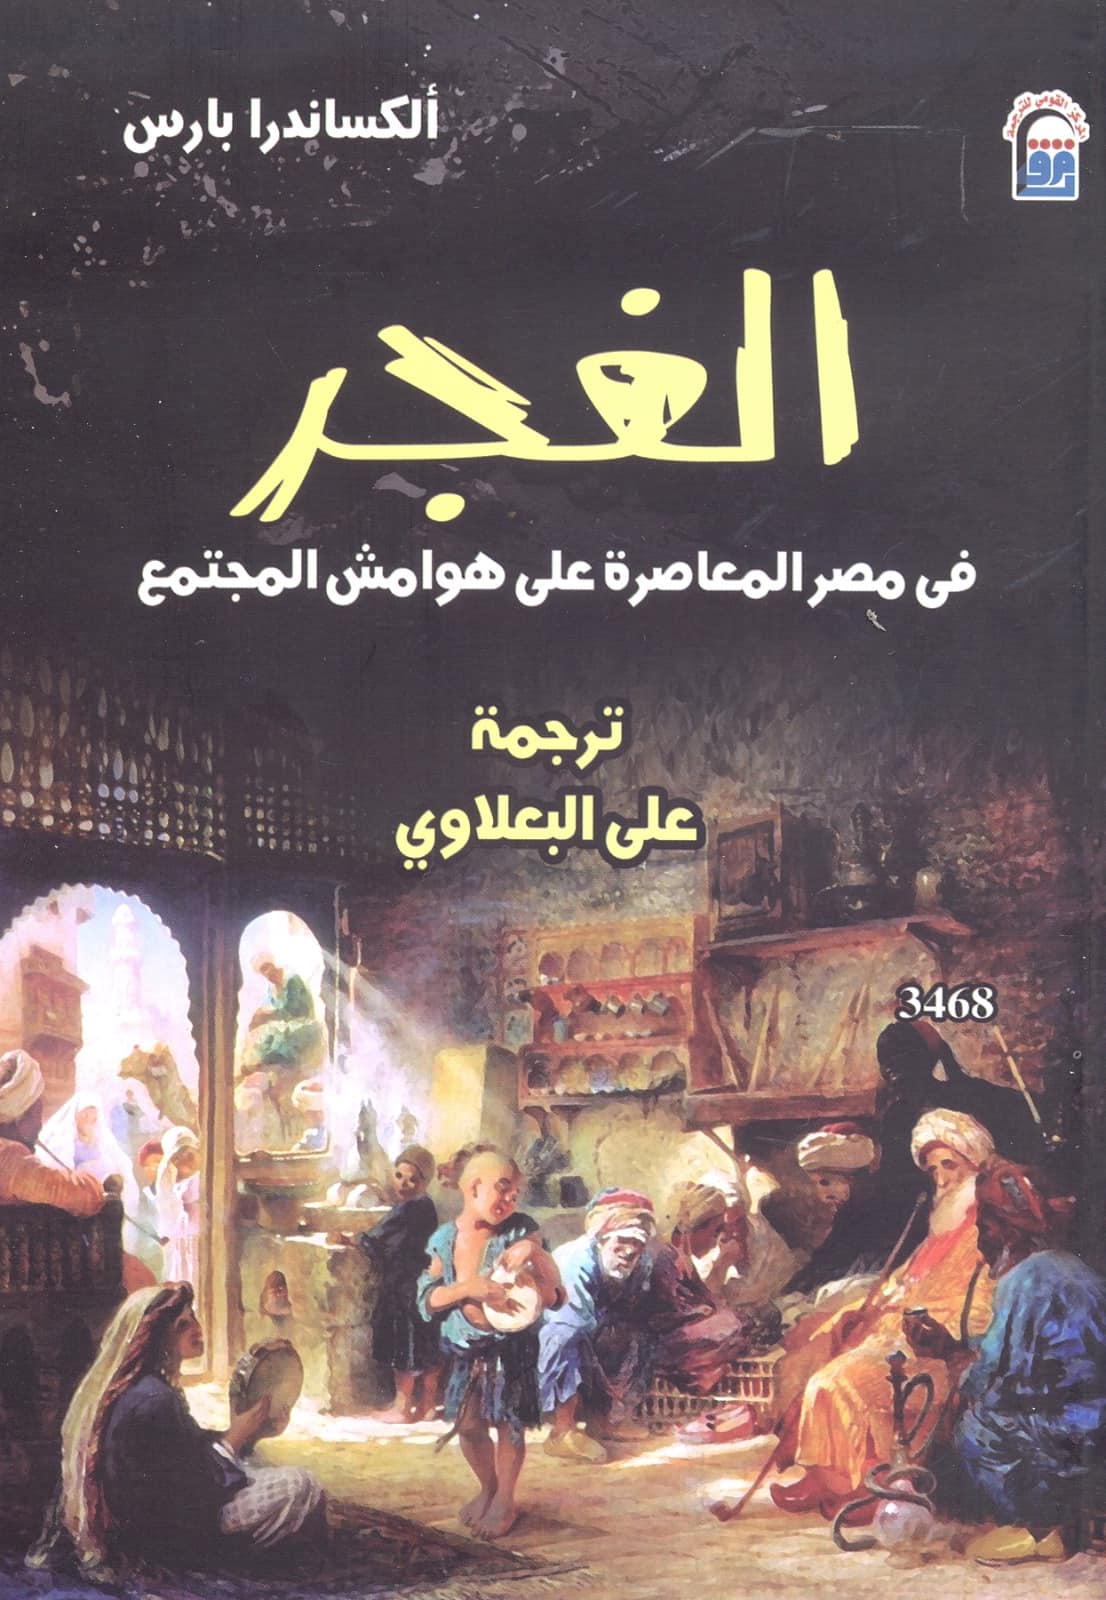 غلاف الطبعة العربية.jpg